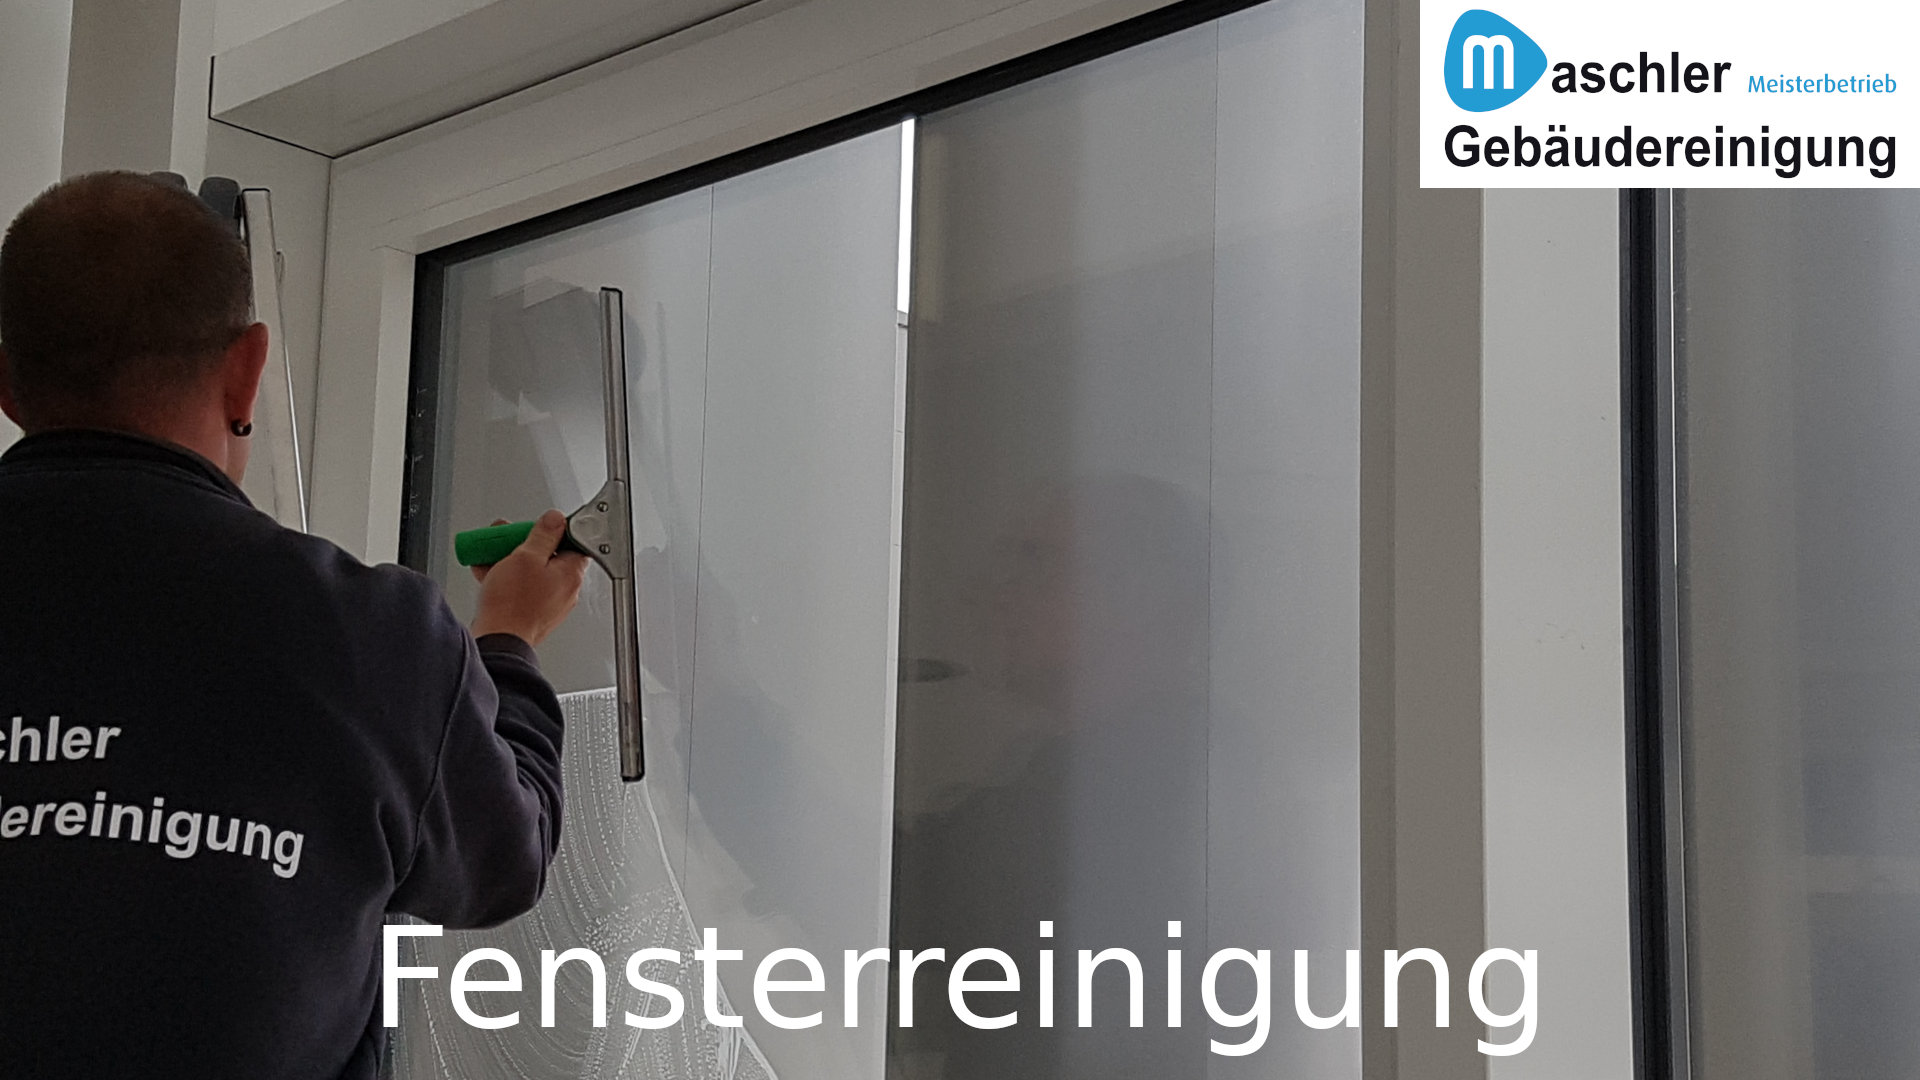 Fenster putzen in Büroräumen - Gebäudereinigung Maschler Schwerin